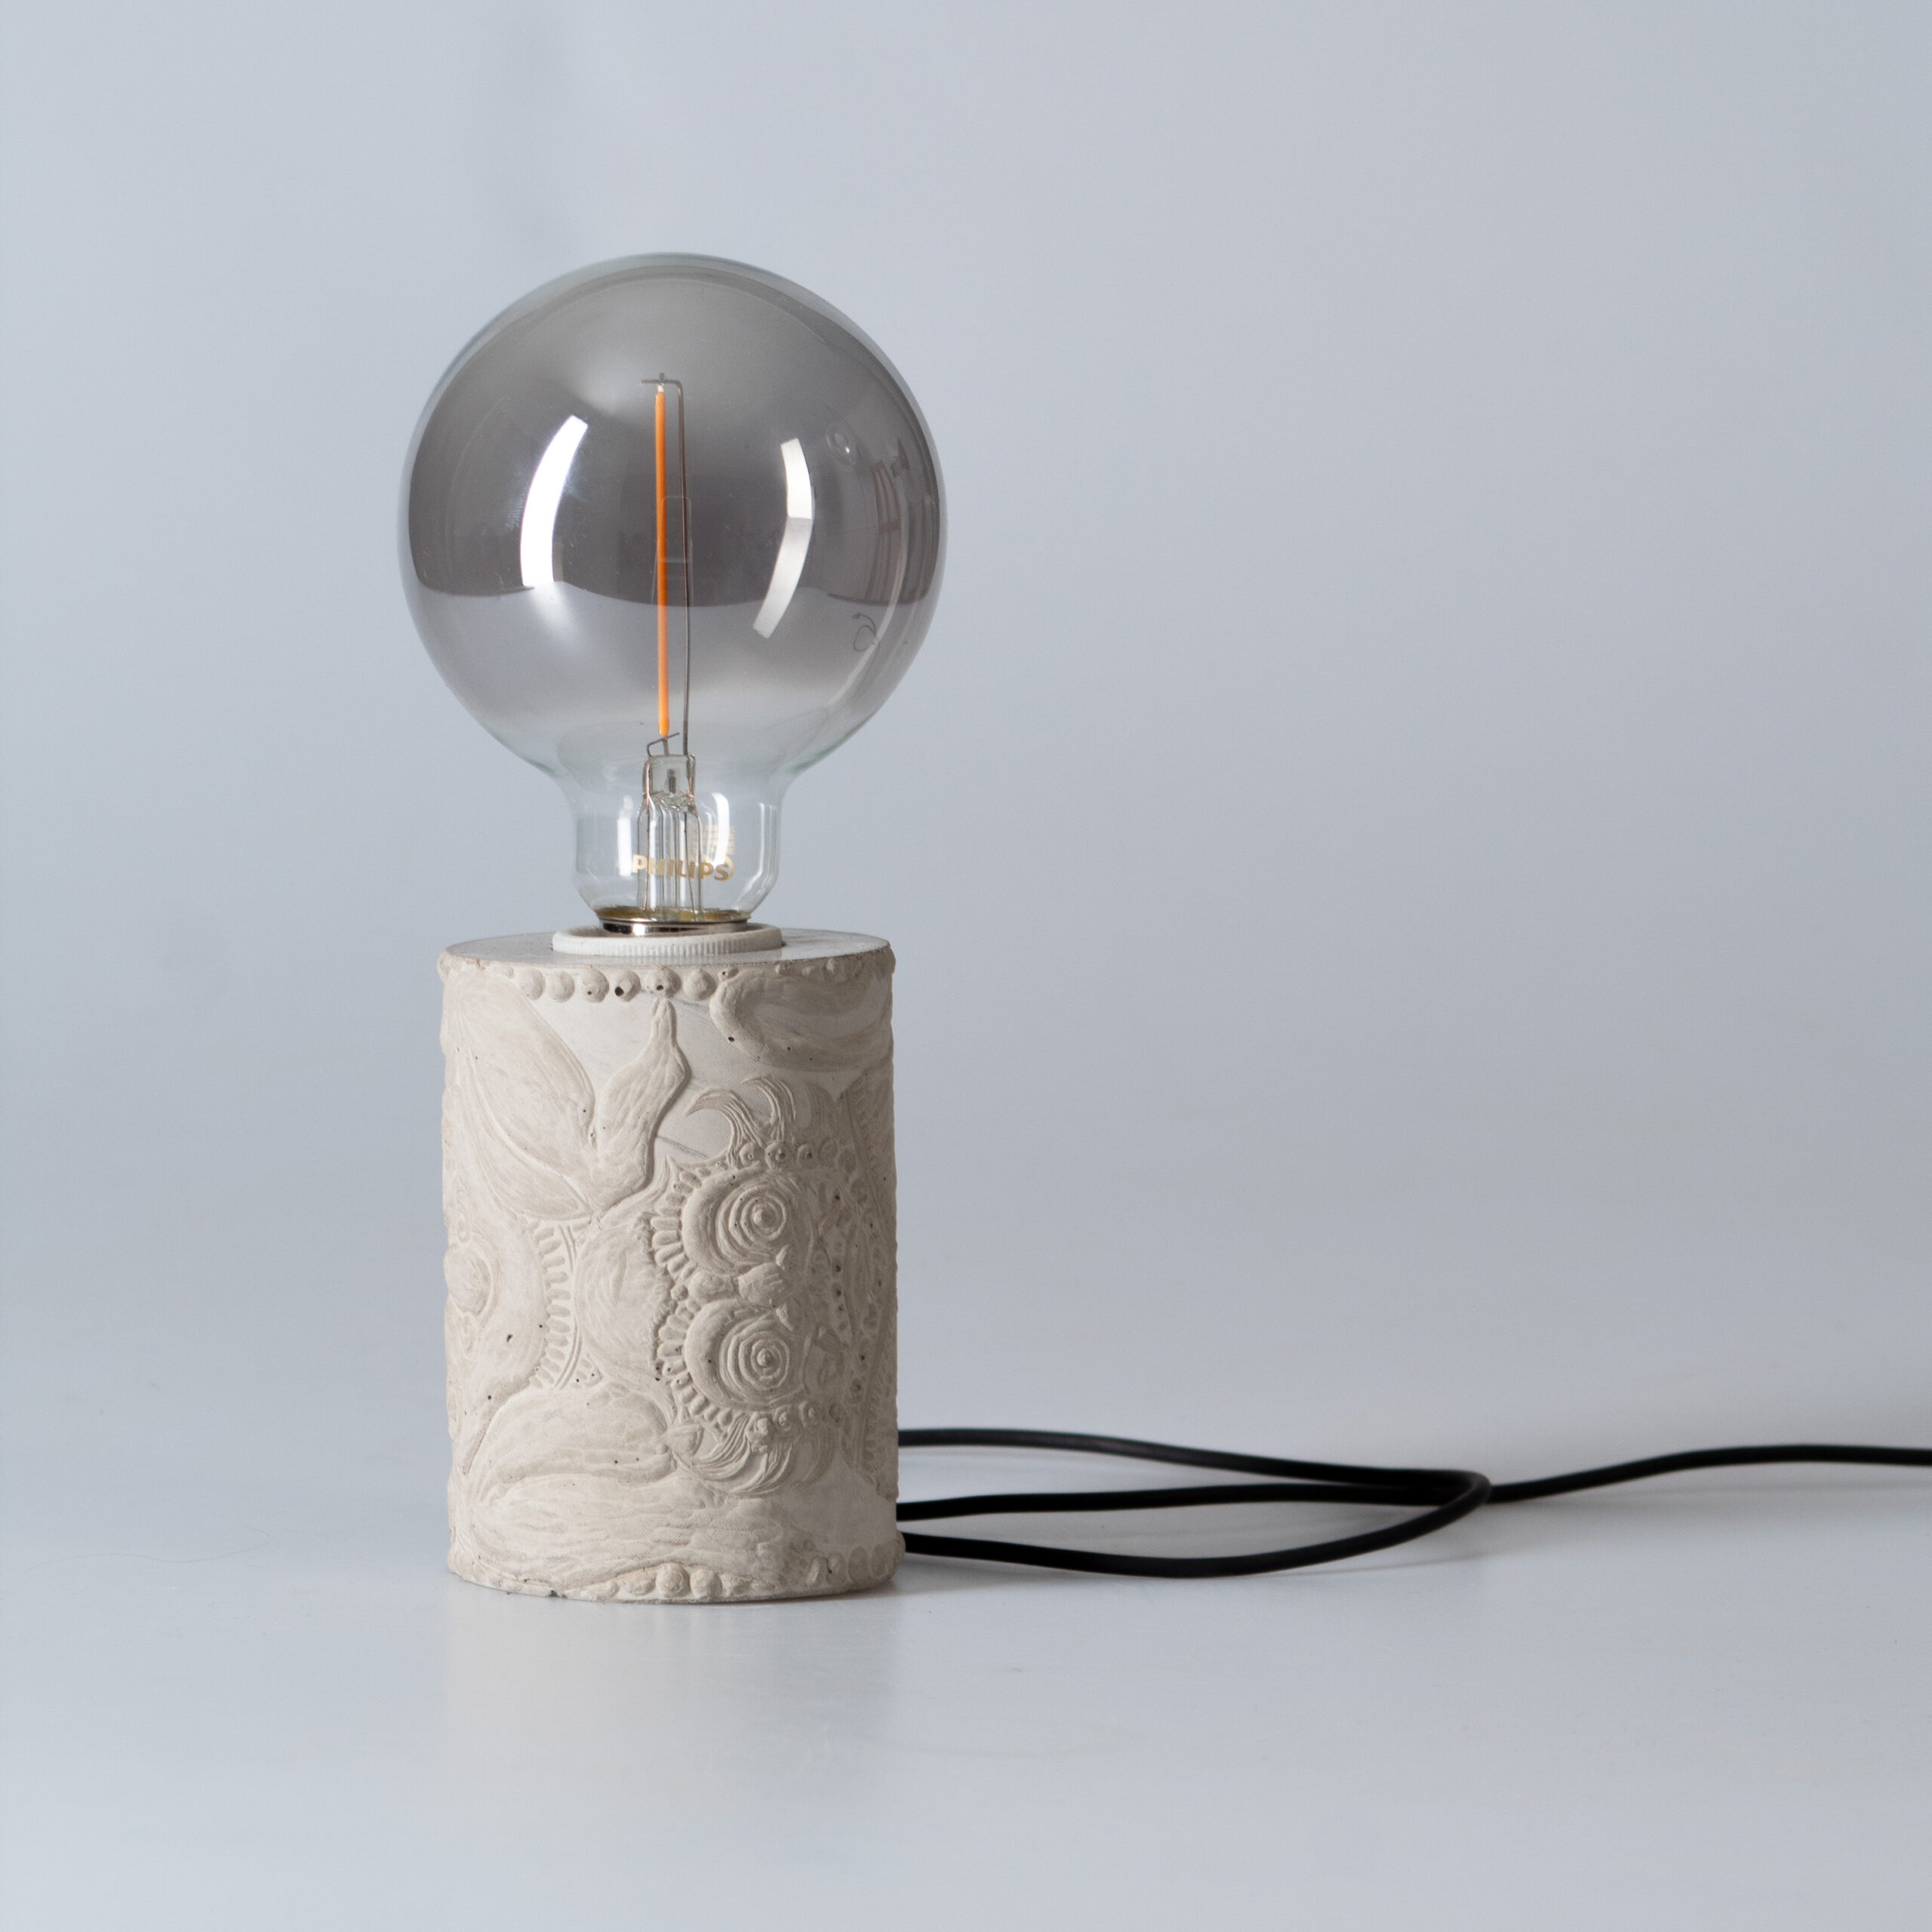 moulded concrete linocut design lamp